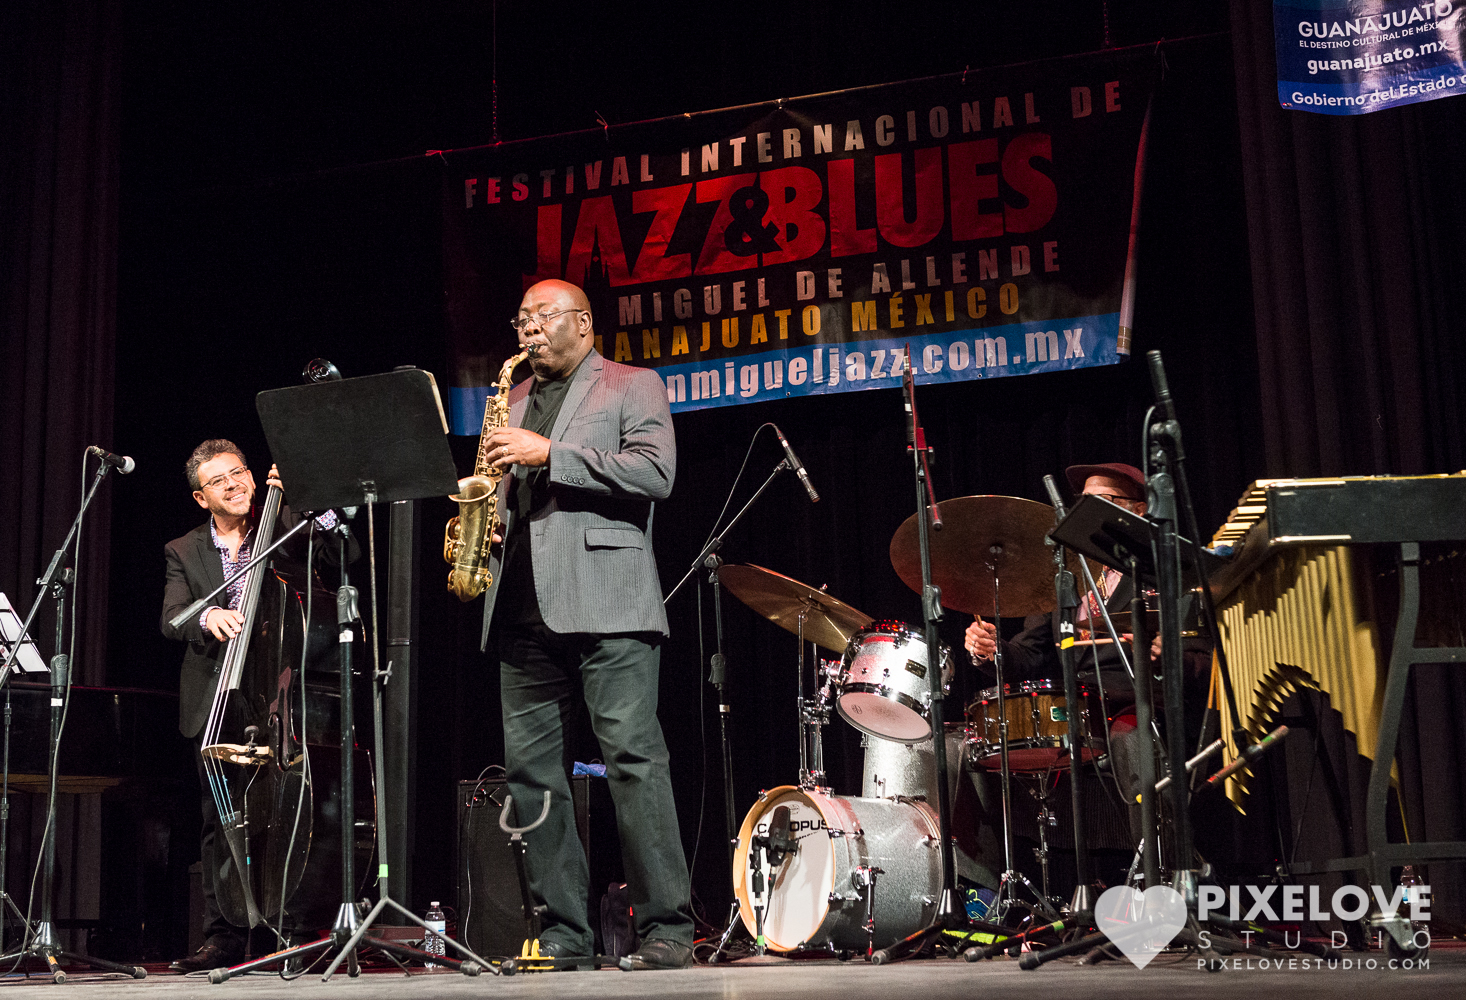 Festival Internacional de Jazz y Blues San Miguel de Allende, Guanajuato presenta el Concierto del Día Internacional del Jazz el 29 de abril 2017 en el Teatro Angela Peralta.